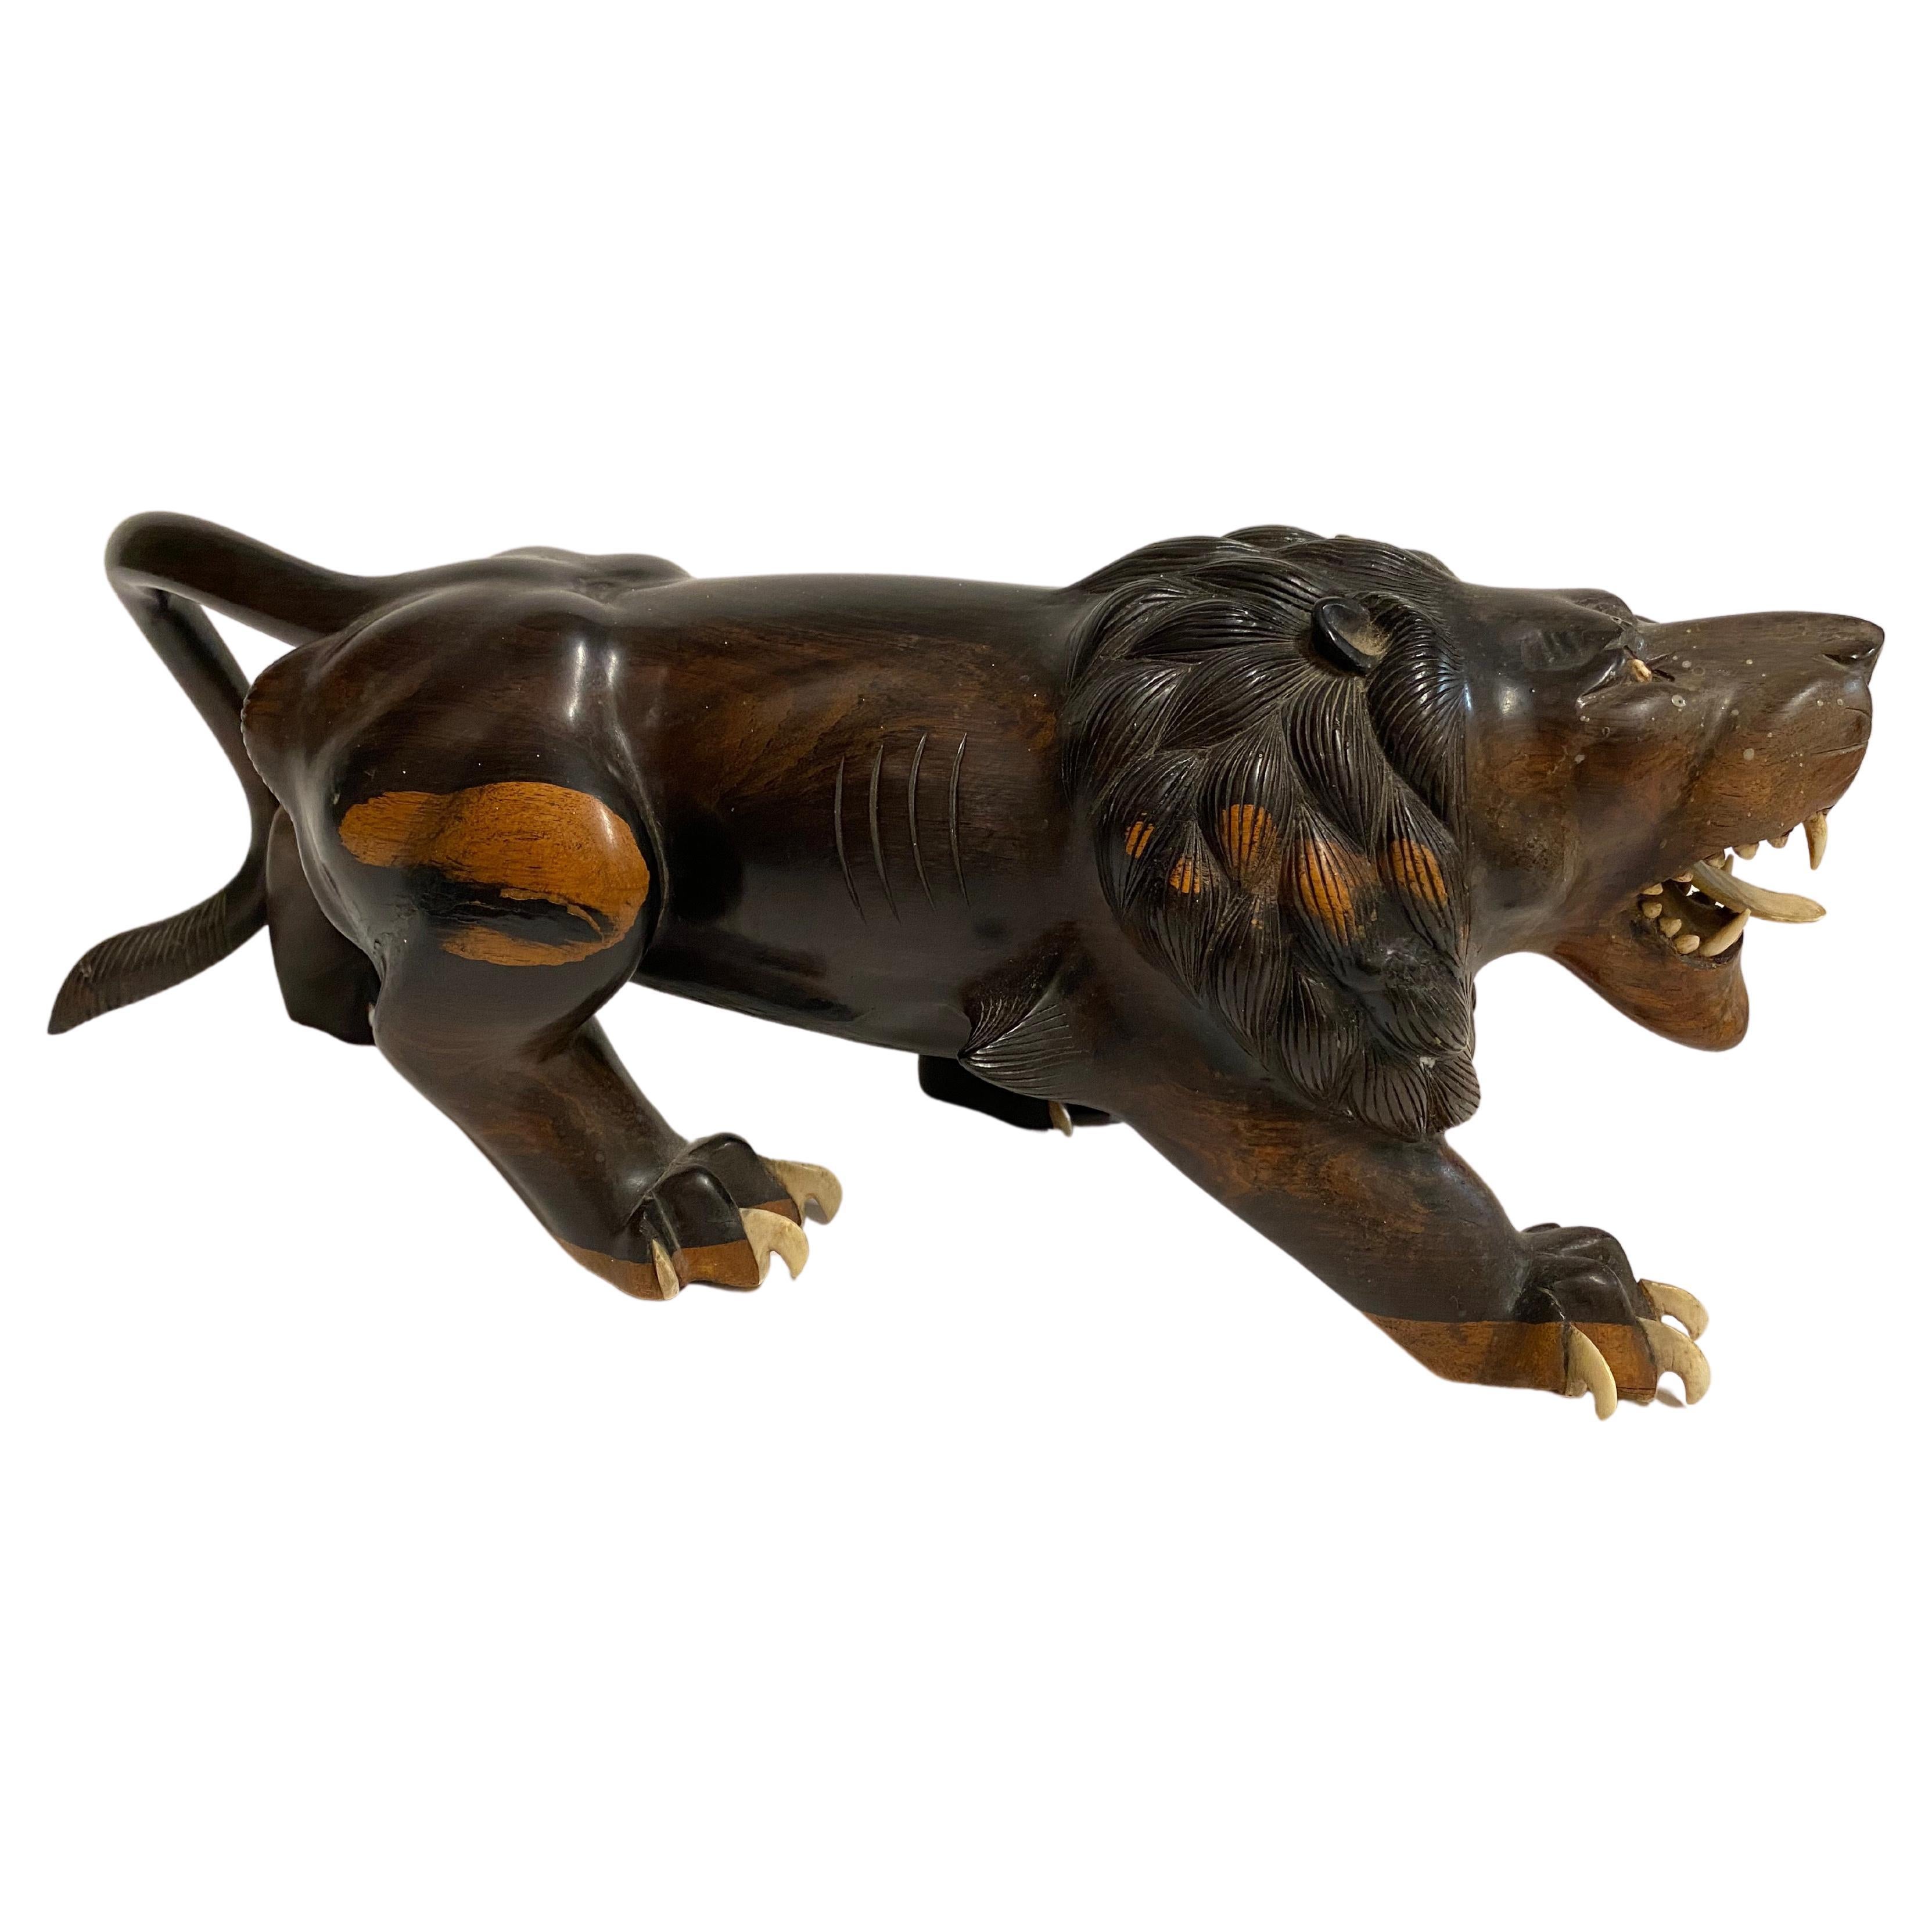 Il s'agit d'une paire exceptionnelle de figurines en bois dur sculpté de la période Meiji représentant un lion et un tigre féroces. La sculpture est exceptionnelle, tout comme les détails osseux des bouches et des dents. Les pattes finement